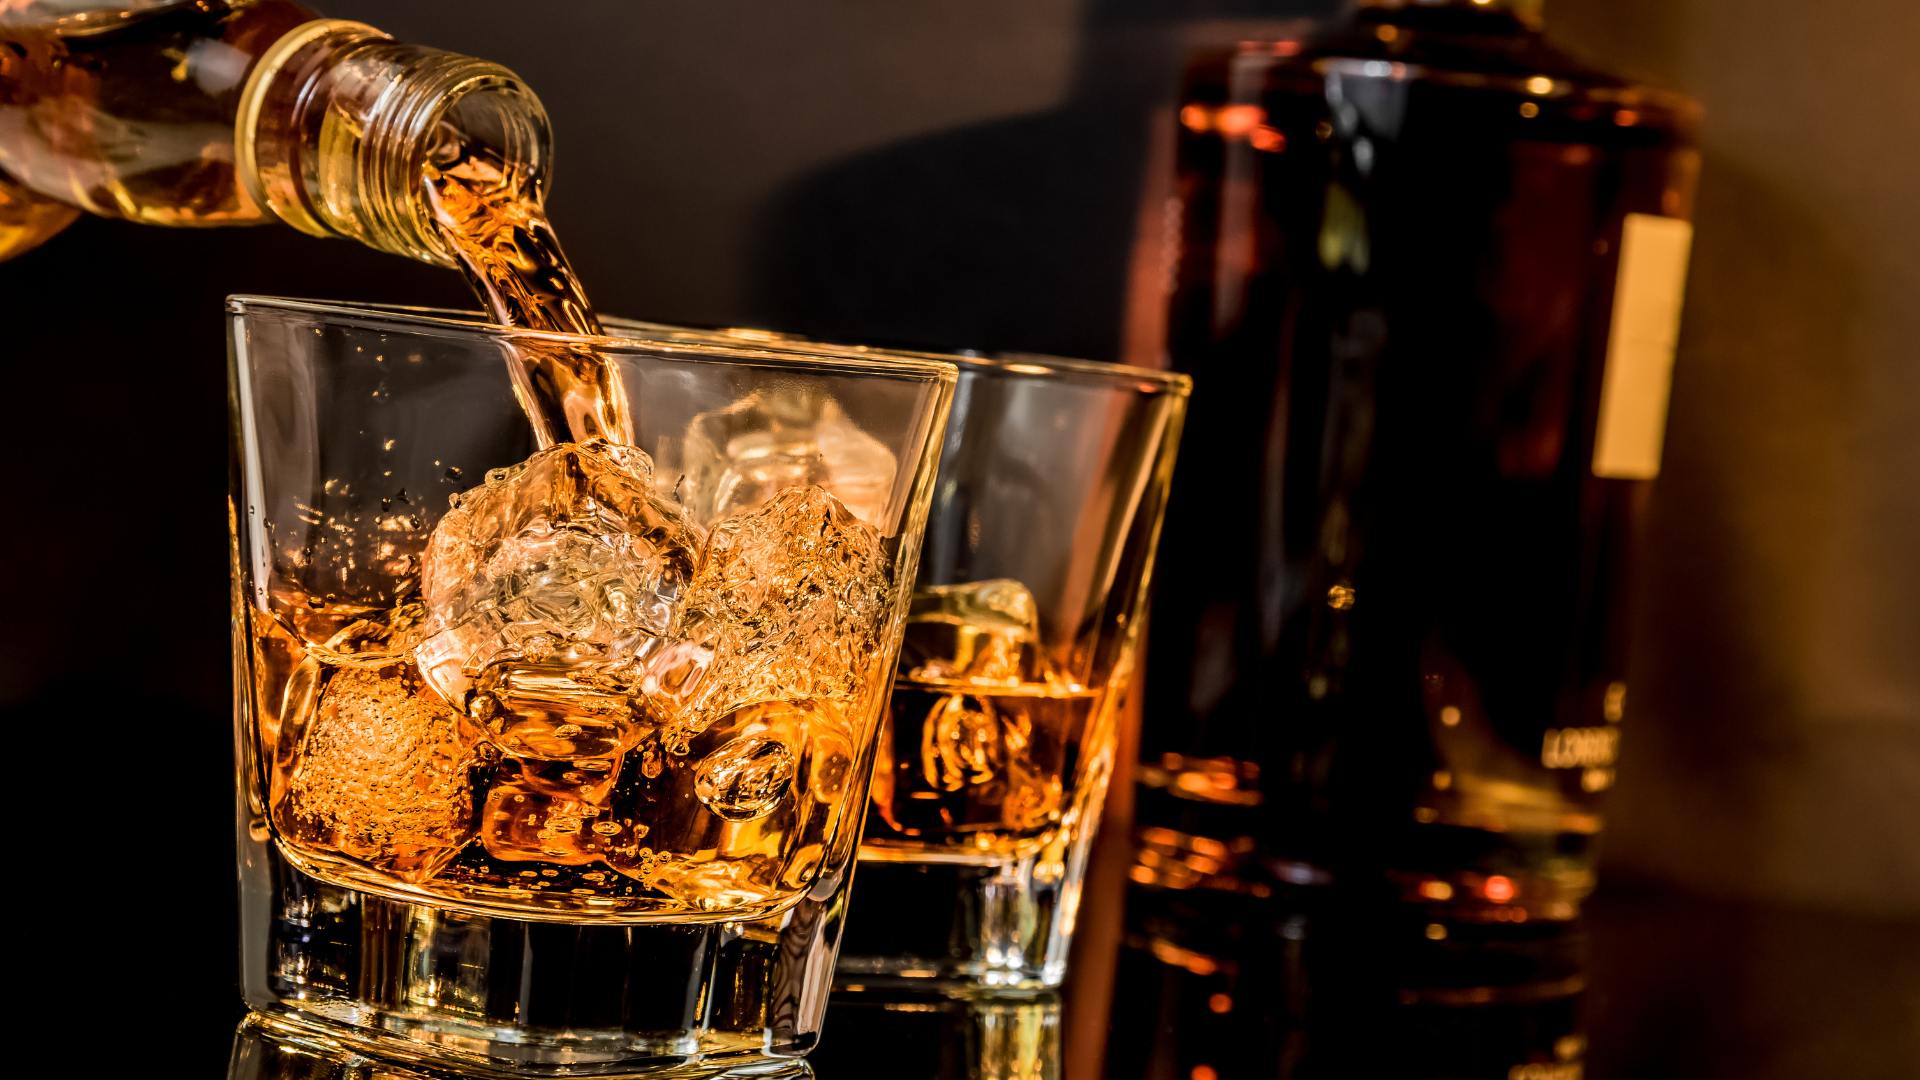 Melhores Whiskys (Chivas, Old Parr … ) 15 Ótimas Opções